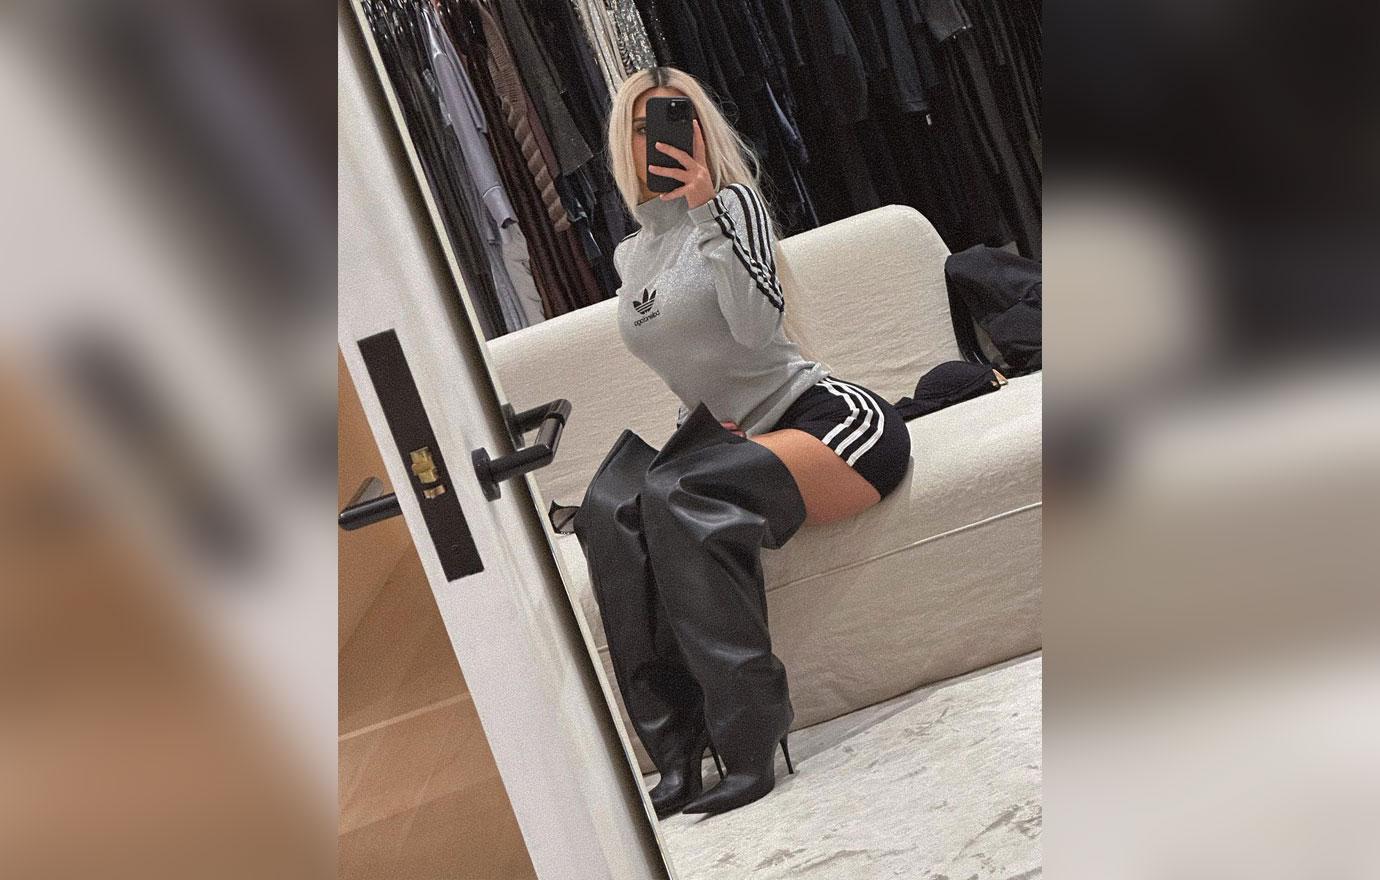 Kim Kardashian slated for Balenciaga gig after the BDSM pics scandal